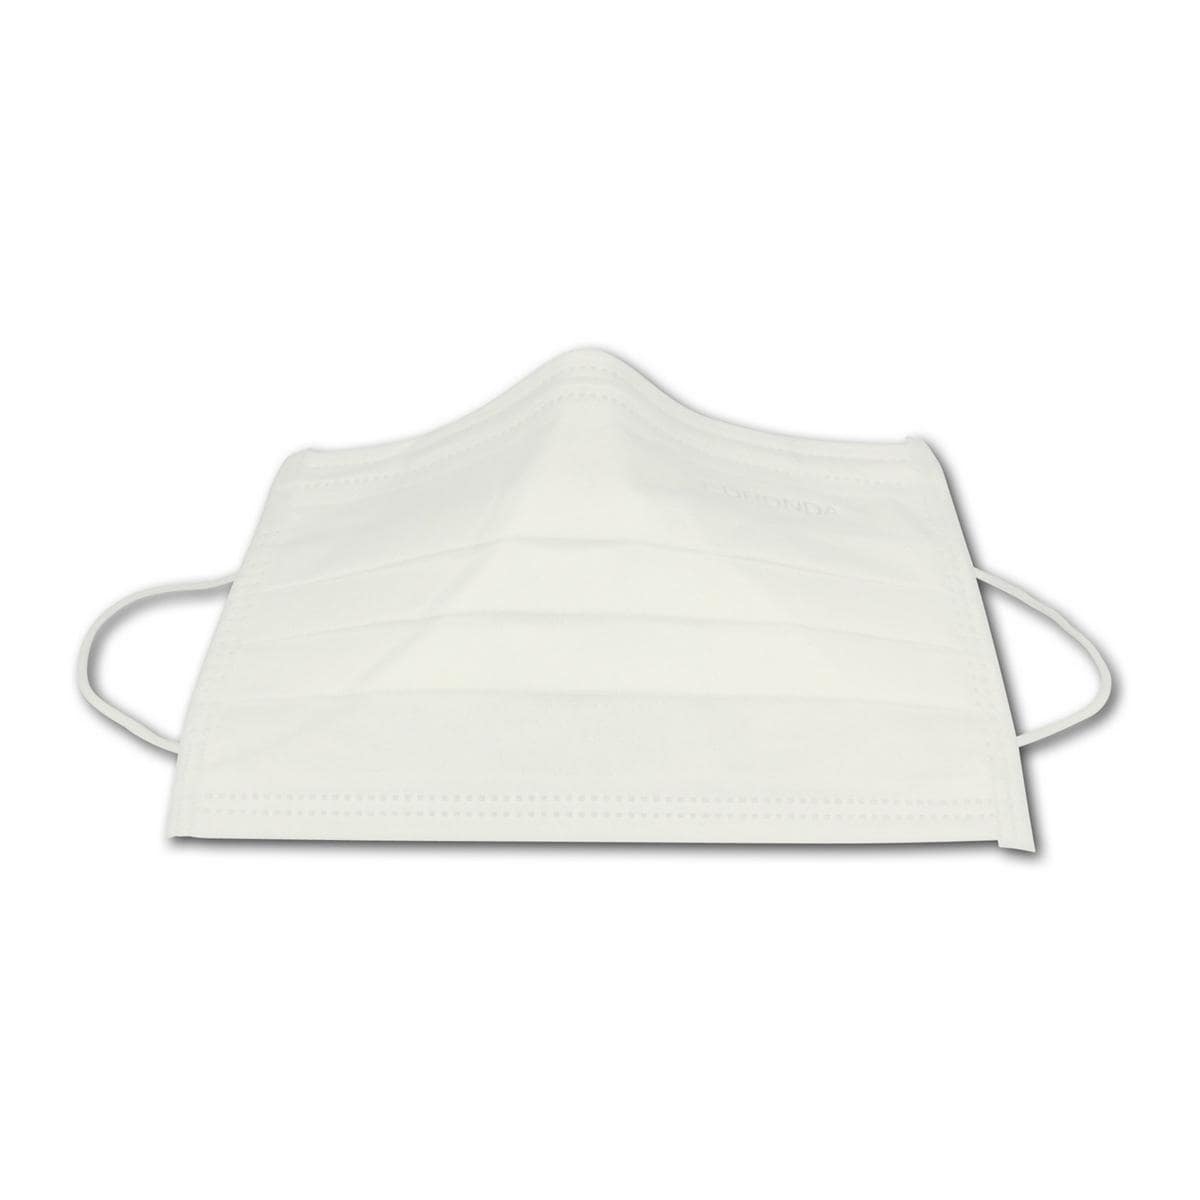 Monoart® Mundschutz Pro 3 mit Gummizug - Weiß, Packung 50 Stück